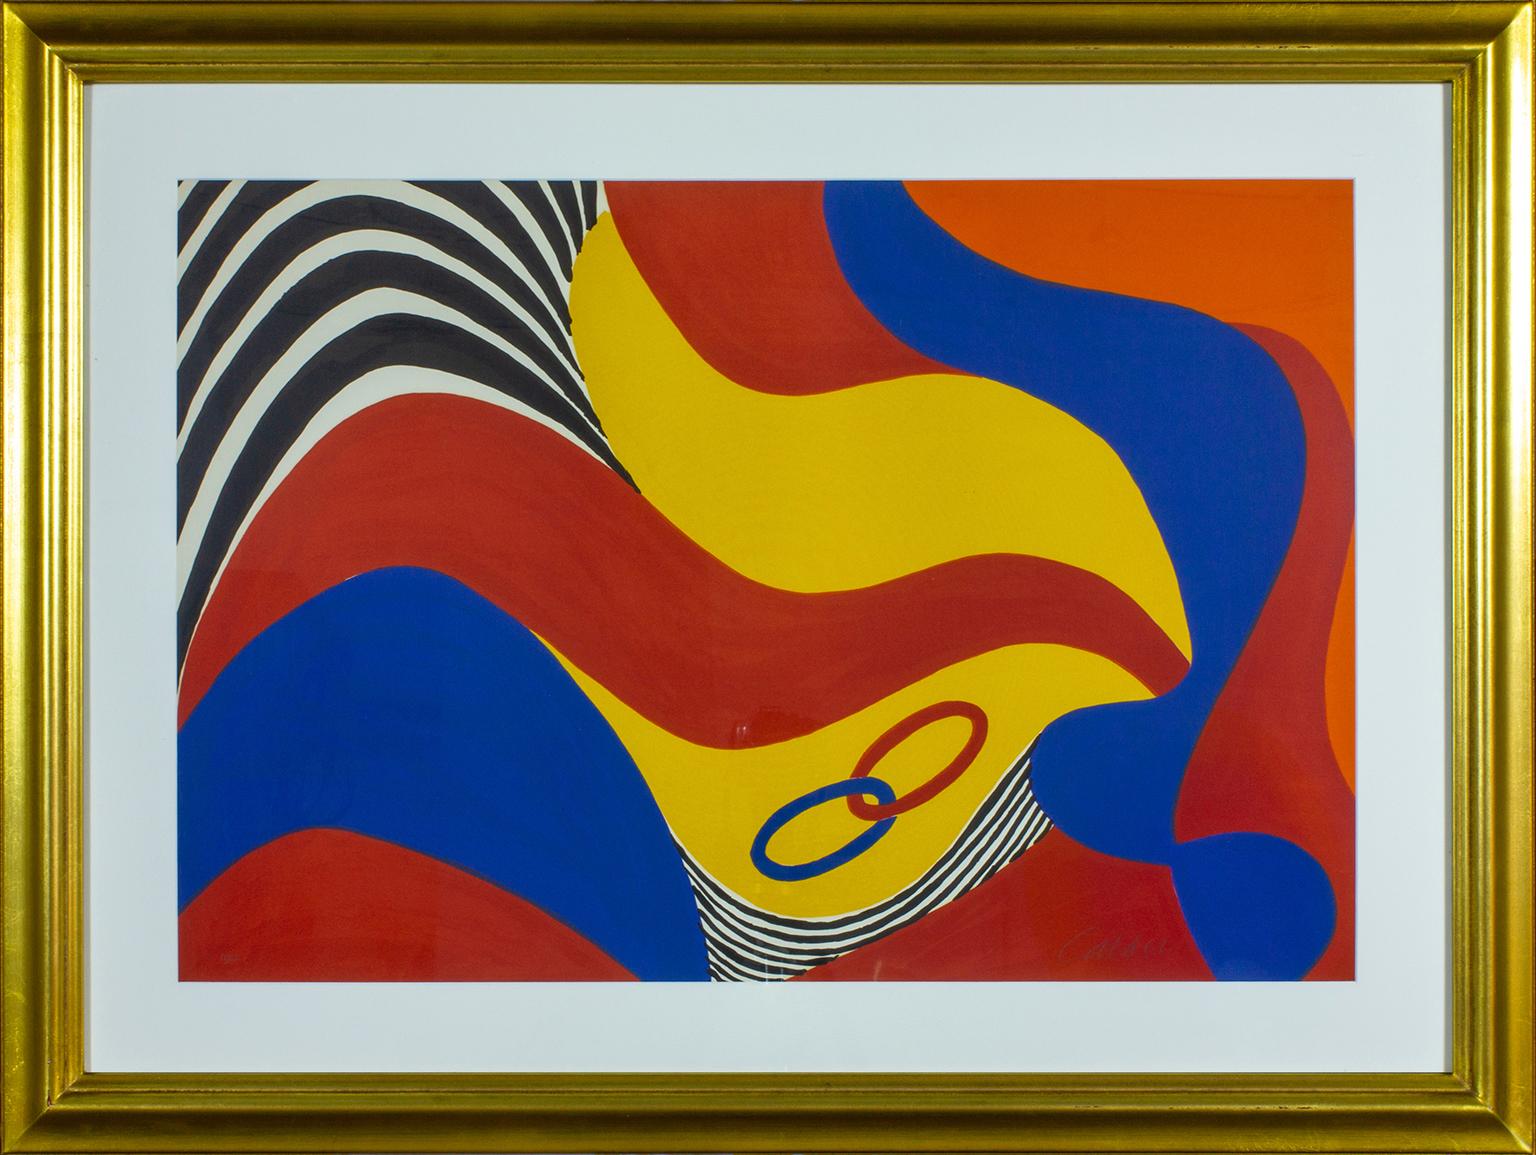 Gerahmte Lithografie "Flying Colors" von Alexander Calder. Signiert Calder in der rechten unteren Ecke. Ausgabe 11 von 100.